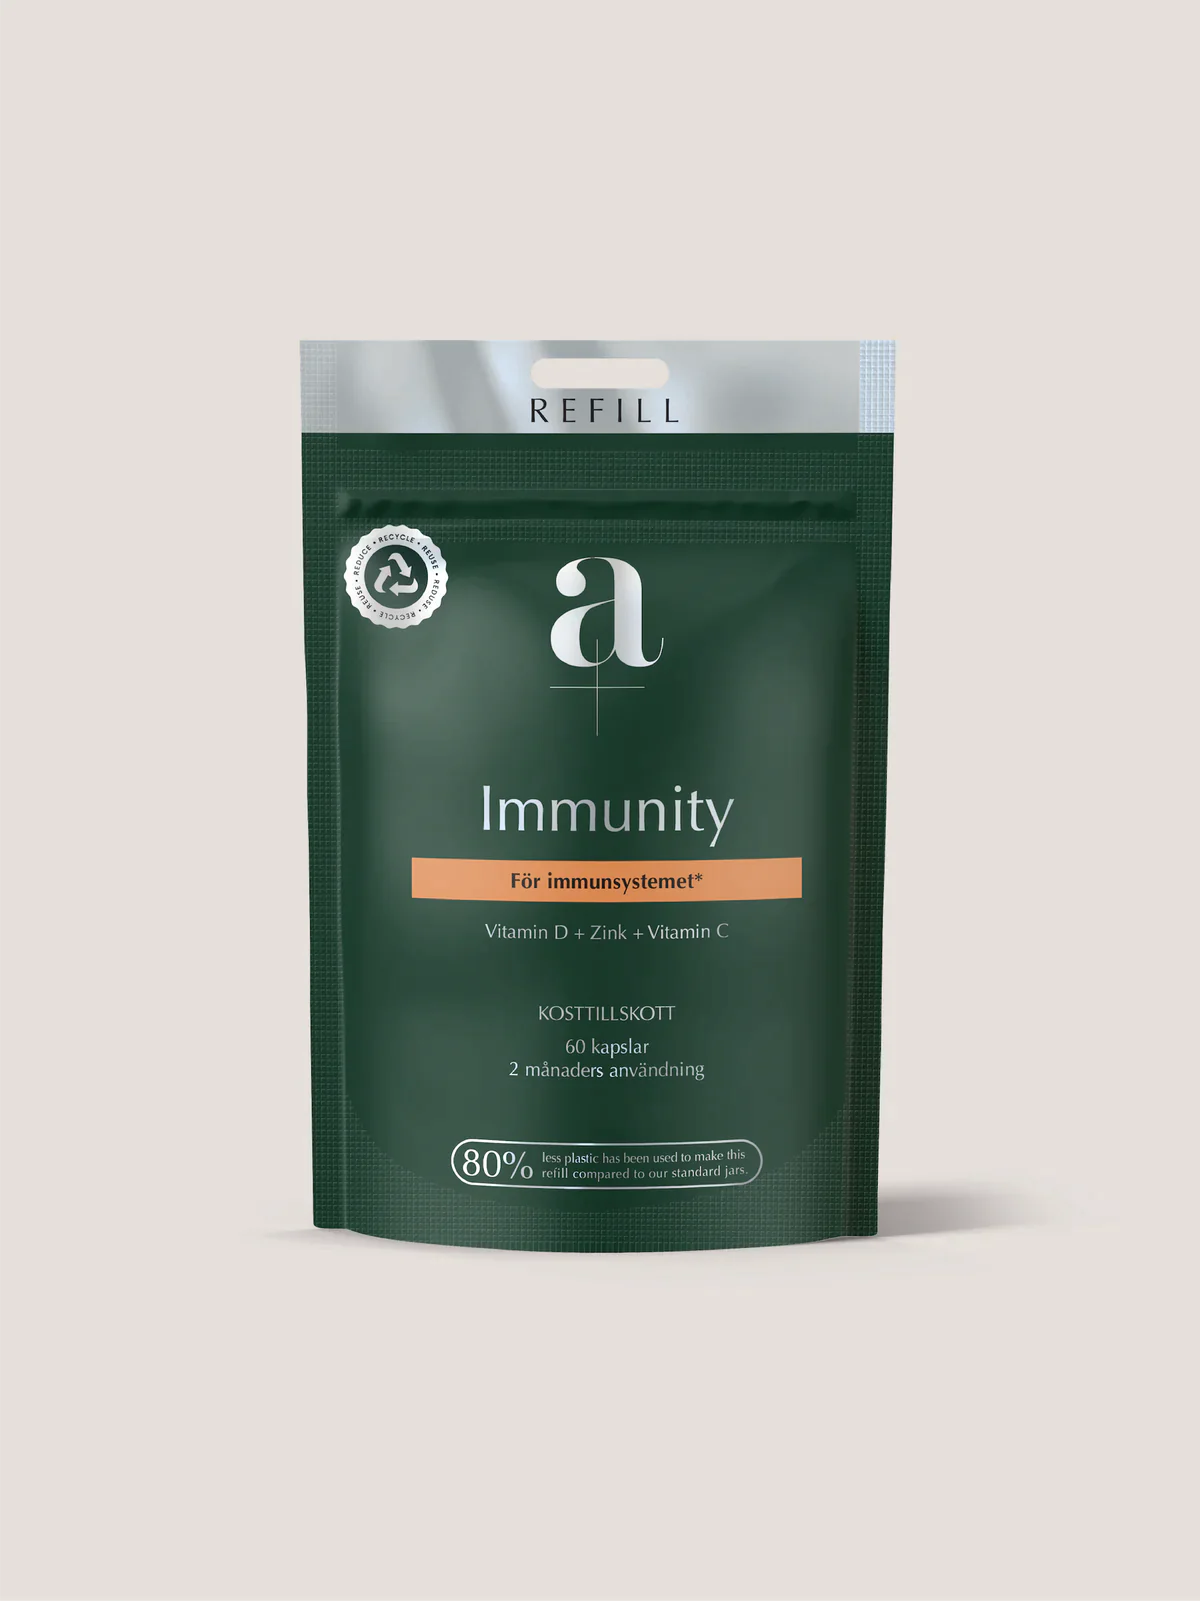 » A+ Immunity Refill (100% off)